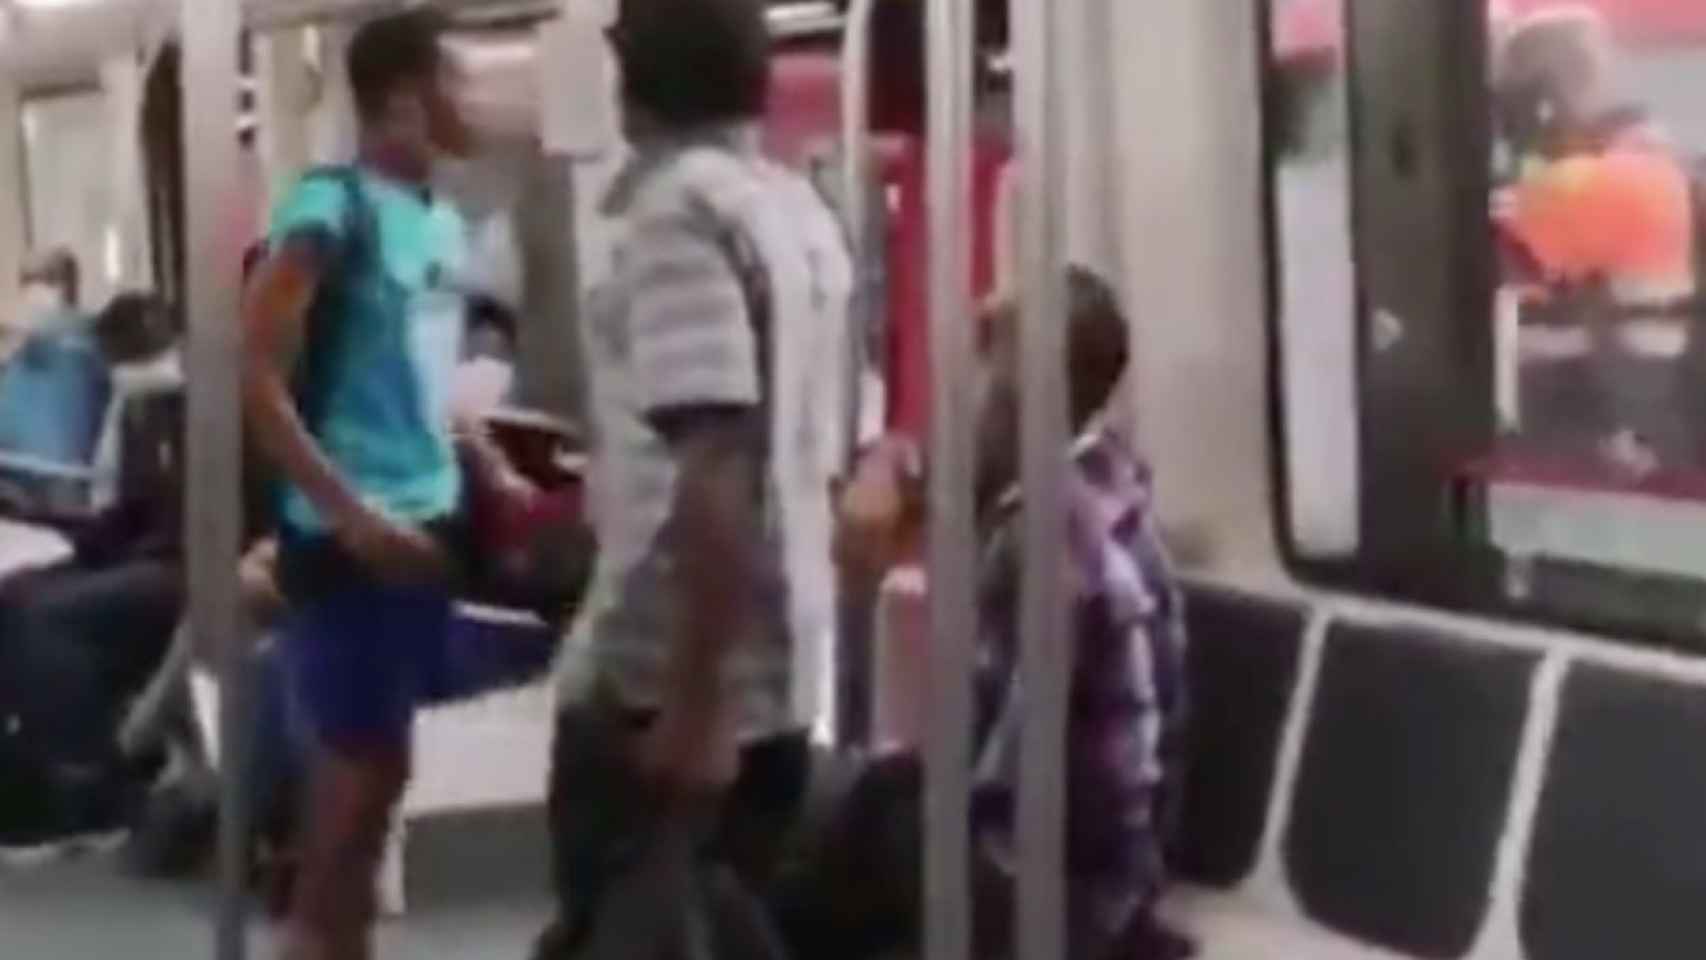 El individuo que ha intentado agredir al vigilante en el metro / HELPERS